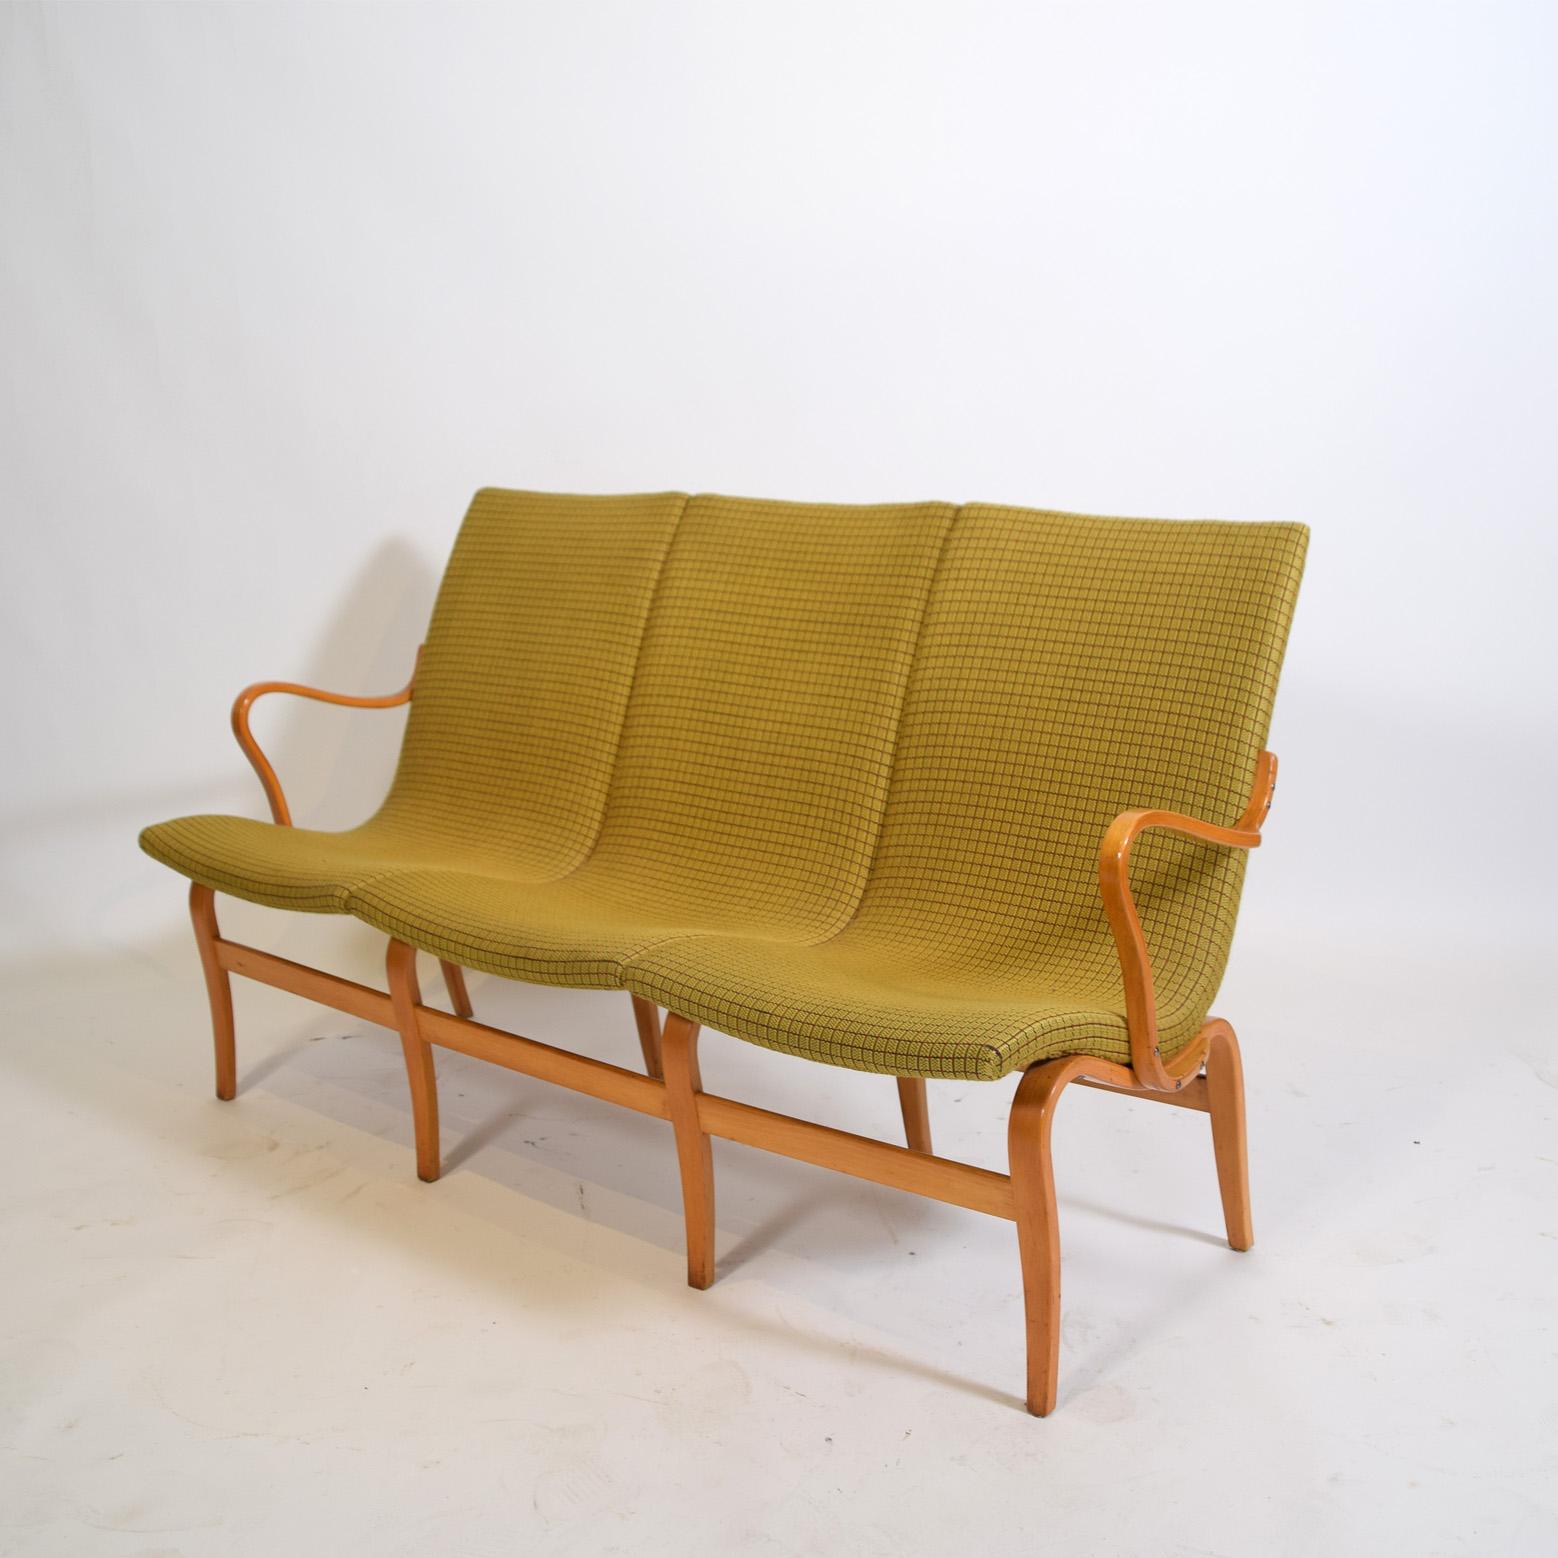 Bruno Mathsson (1907-1988) ist einer der bedeutendsten Möbeldesigner Schwedens. Durch seinen Vater, der als Tischlermeister arbeitete, lernte Mathsson schon früh das Möbeltischlerhandwerk kennen, was ihm später in seinem Beruf als Designer zugute